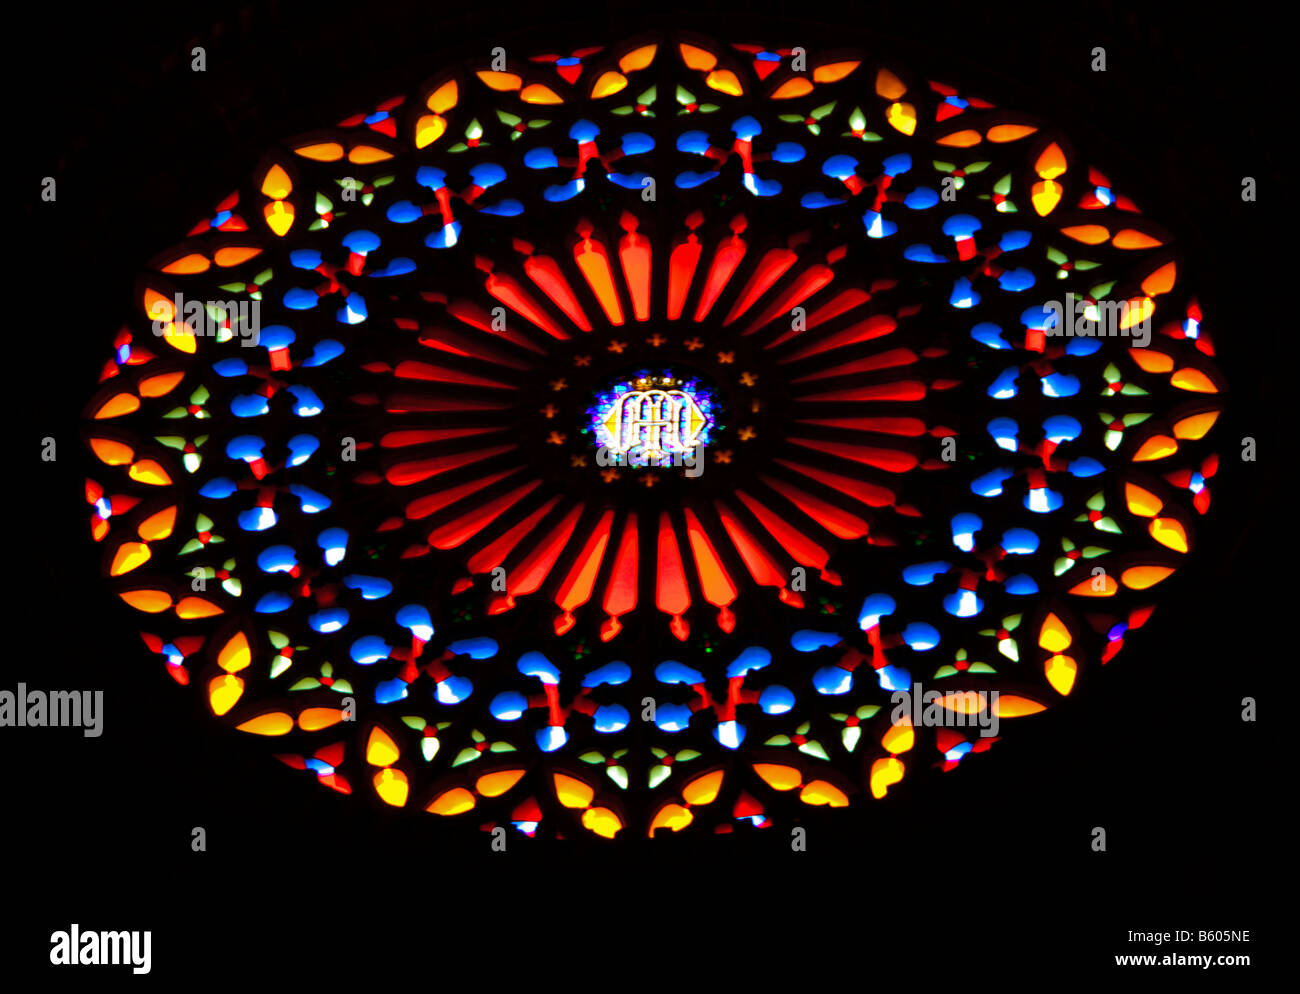 Palma de Mallorca cattedrale di La Seu west end rosone visto dall'estremità est della navata con oltre 1200 pezzi di vetro Foto Stock